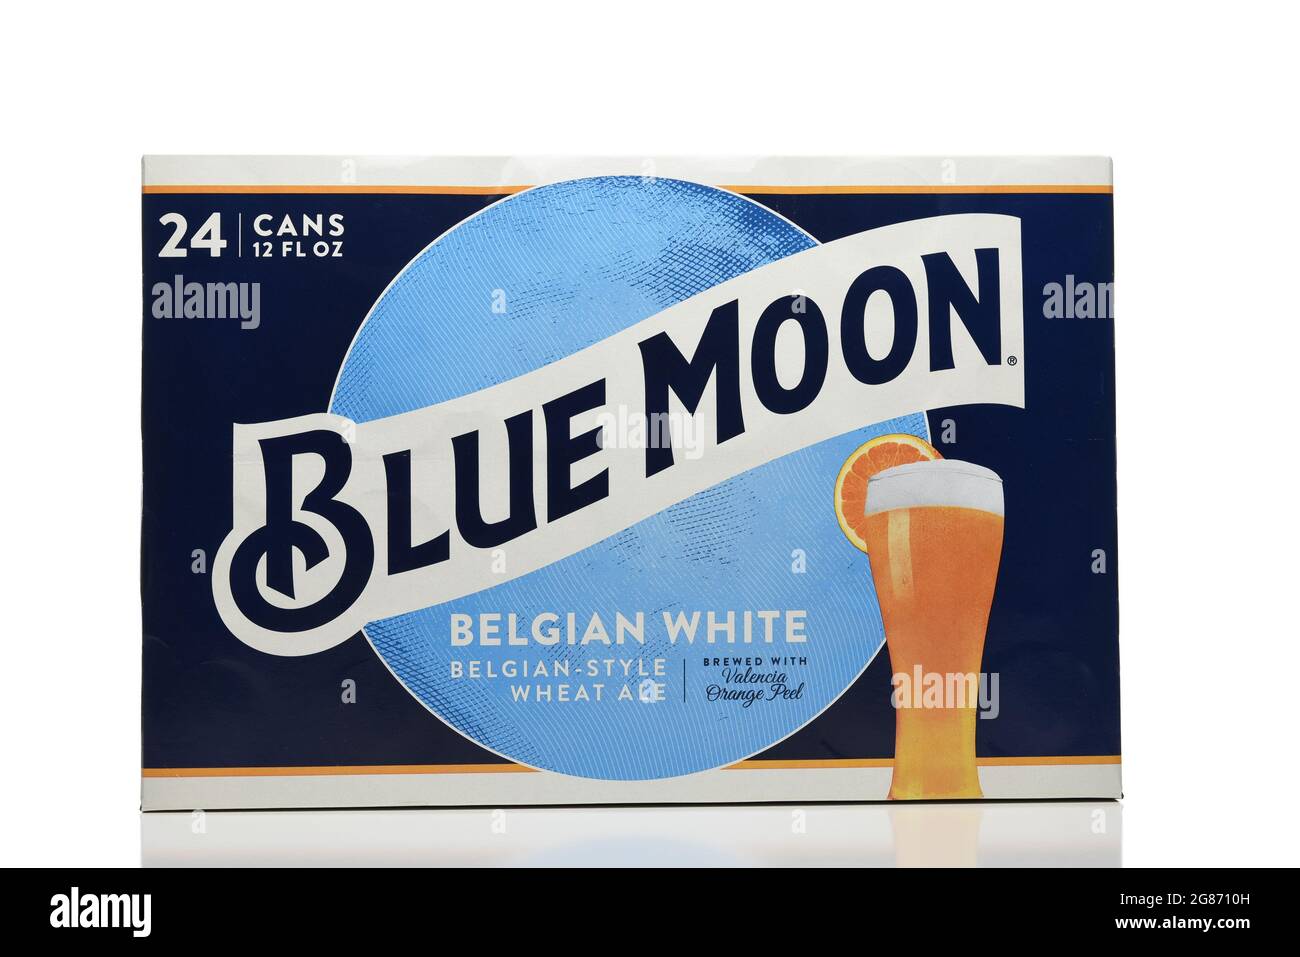 IRIVNE, CALIFORNIE - 17 JUL 2021: Un paquet de 24 boîtes de Blue Moon Belge White Ale aluminium sur blanc. Banque D'Images